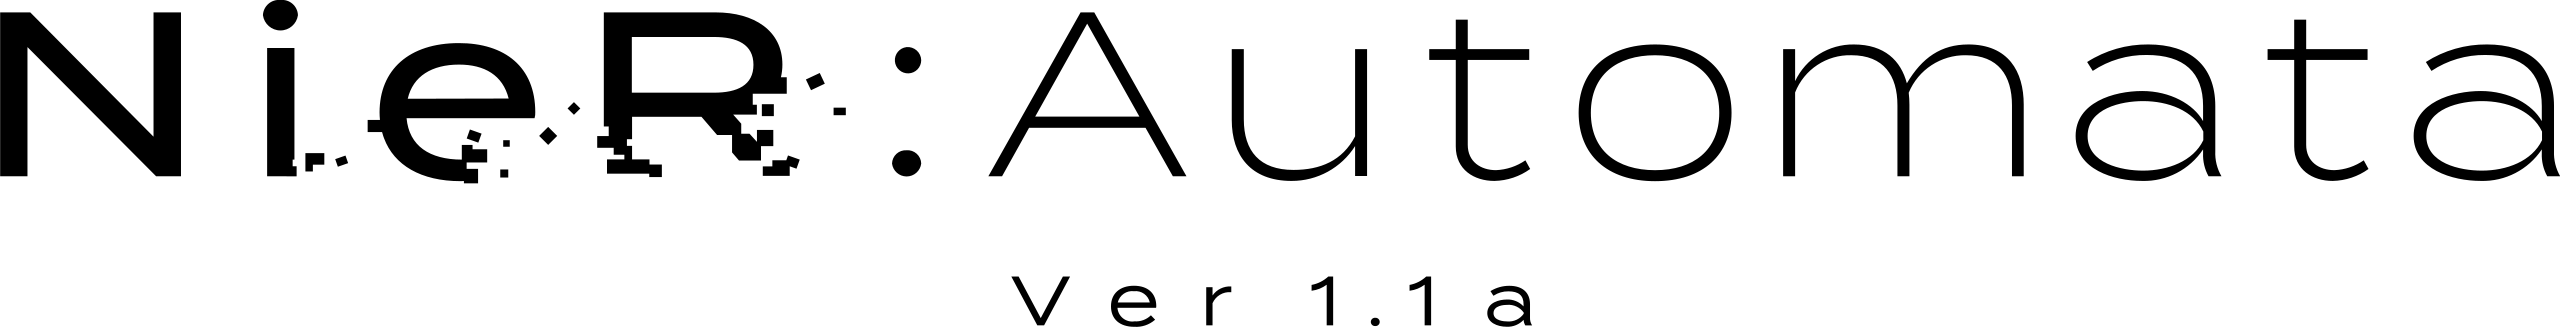 Nier: Automata Ver1.1a - Wikipedia